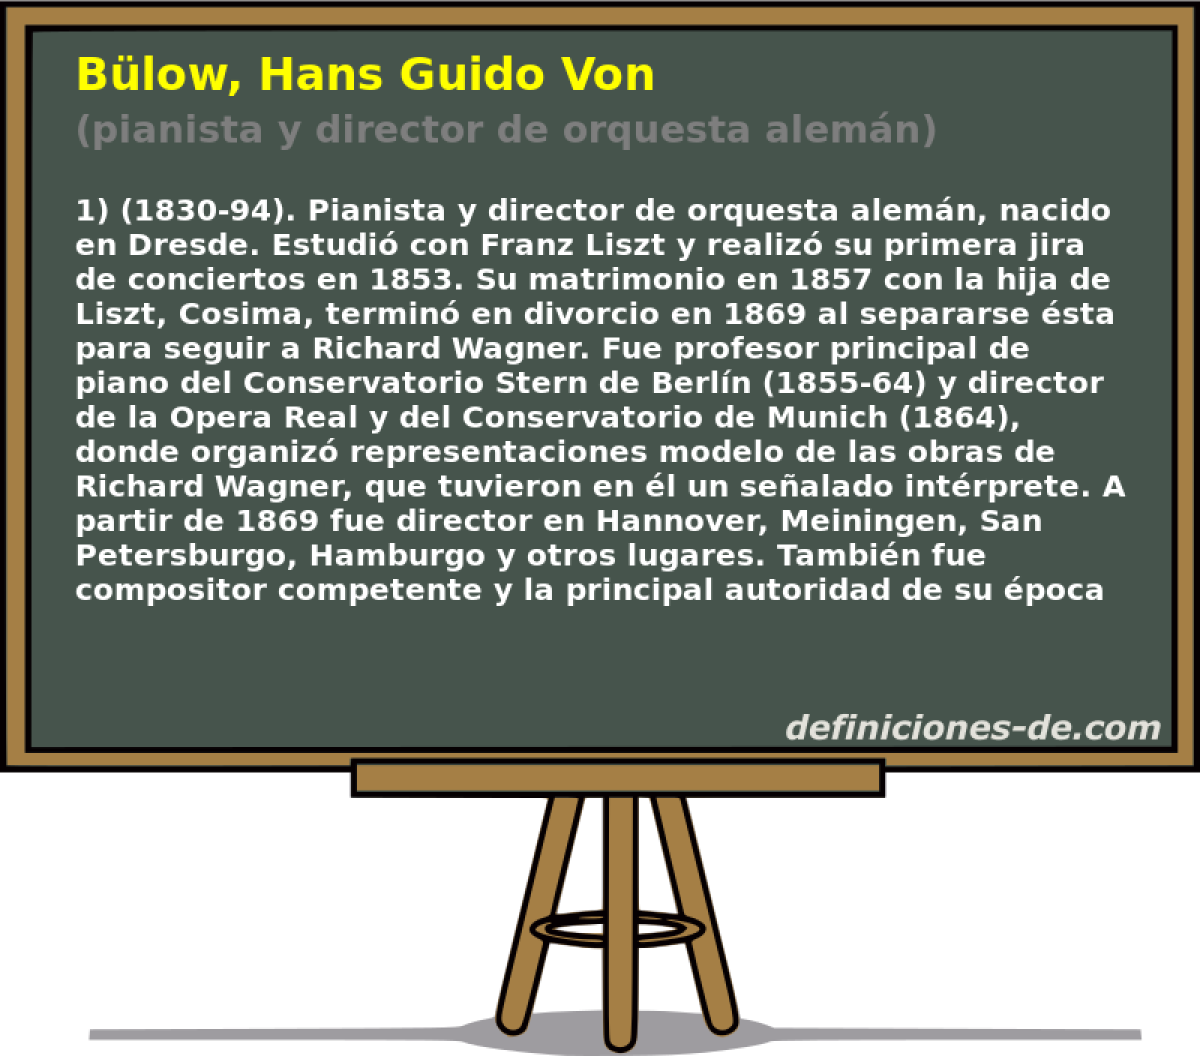 Blow, Hans Guido Von (pianista y director de orquesta alemn)